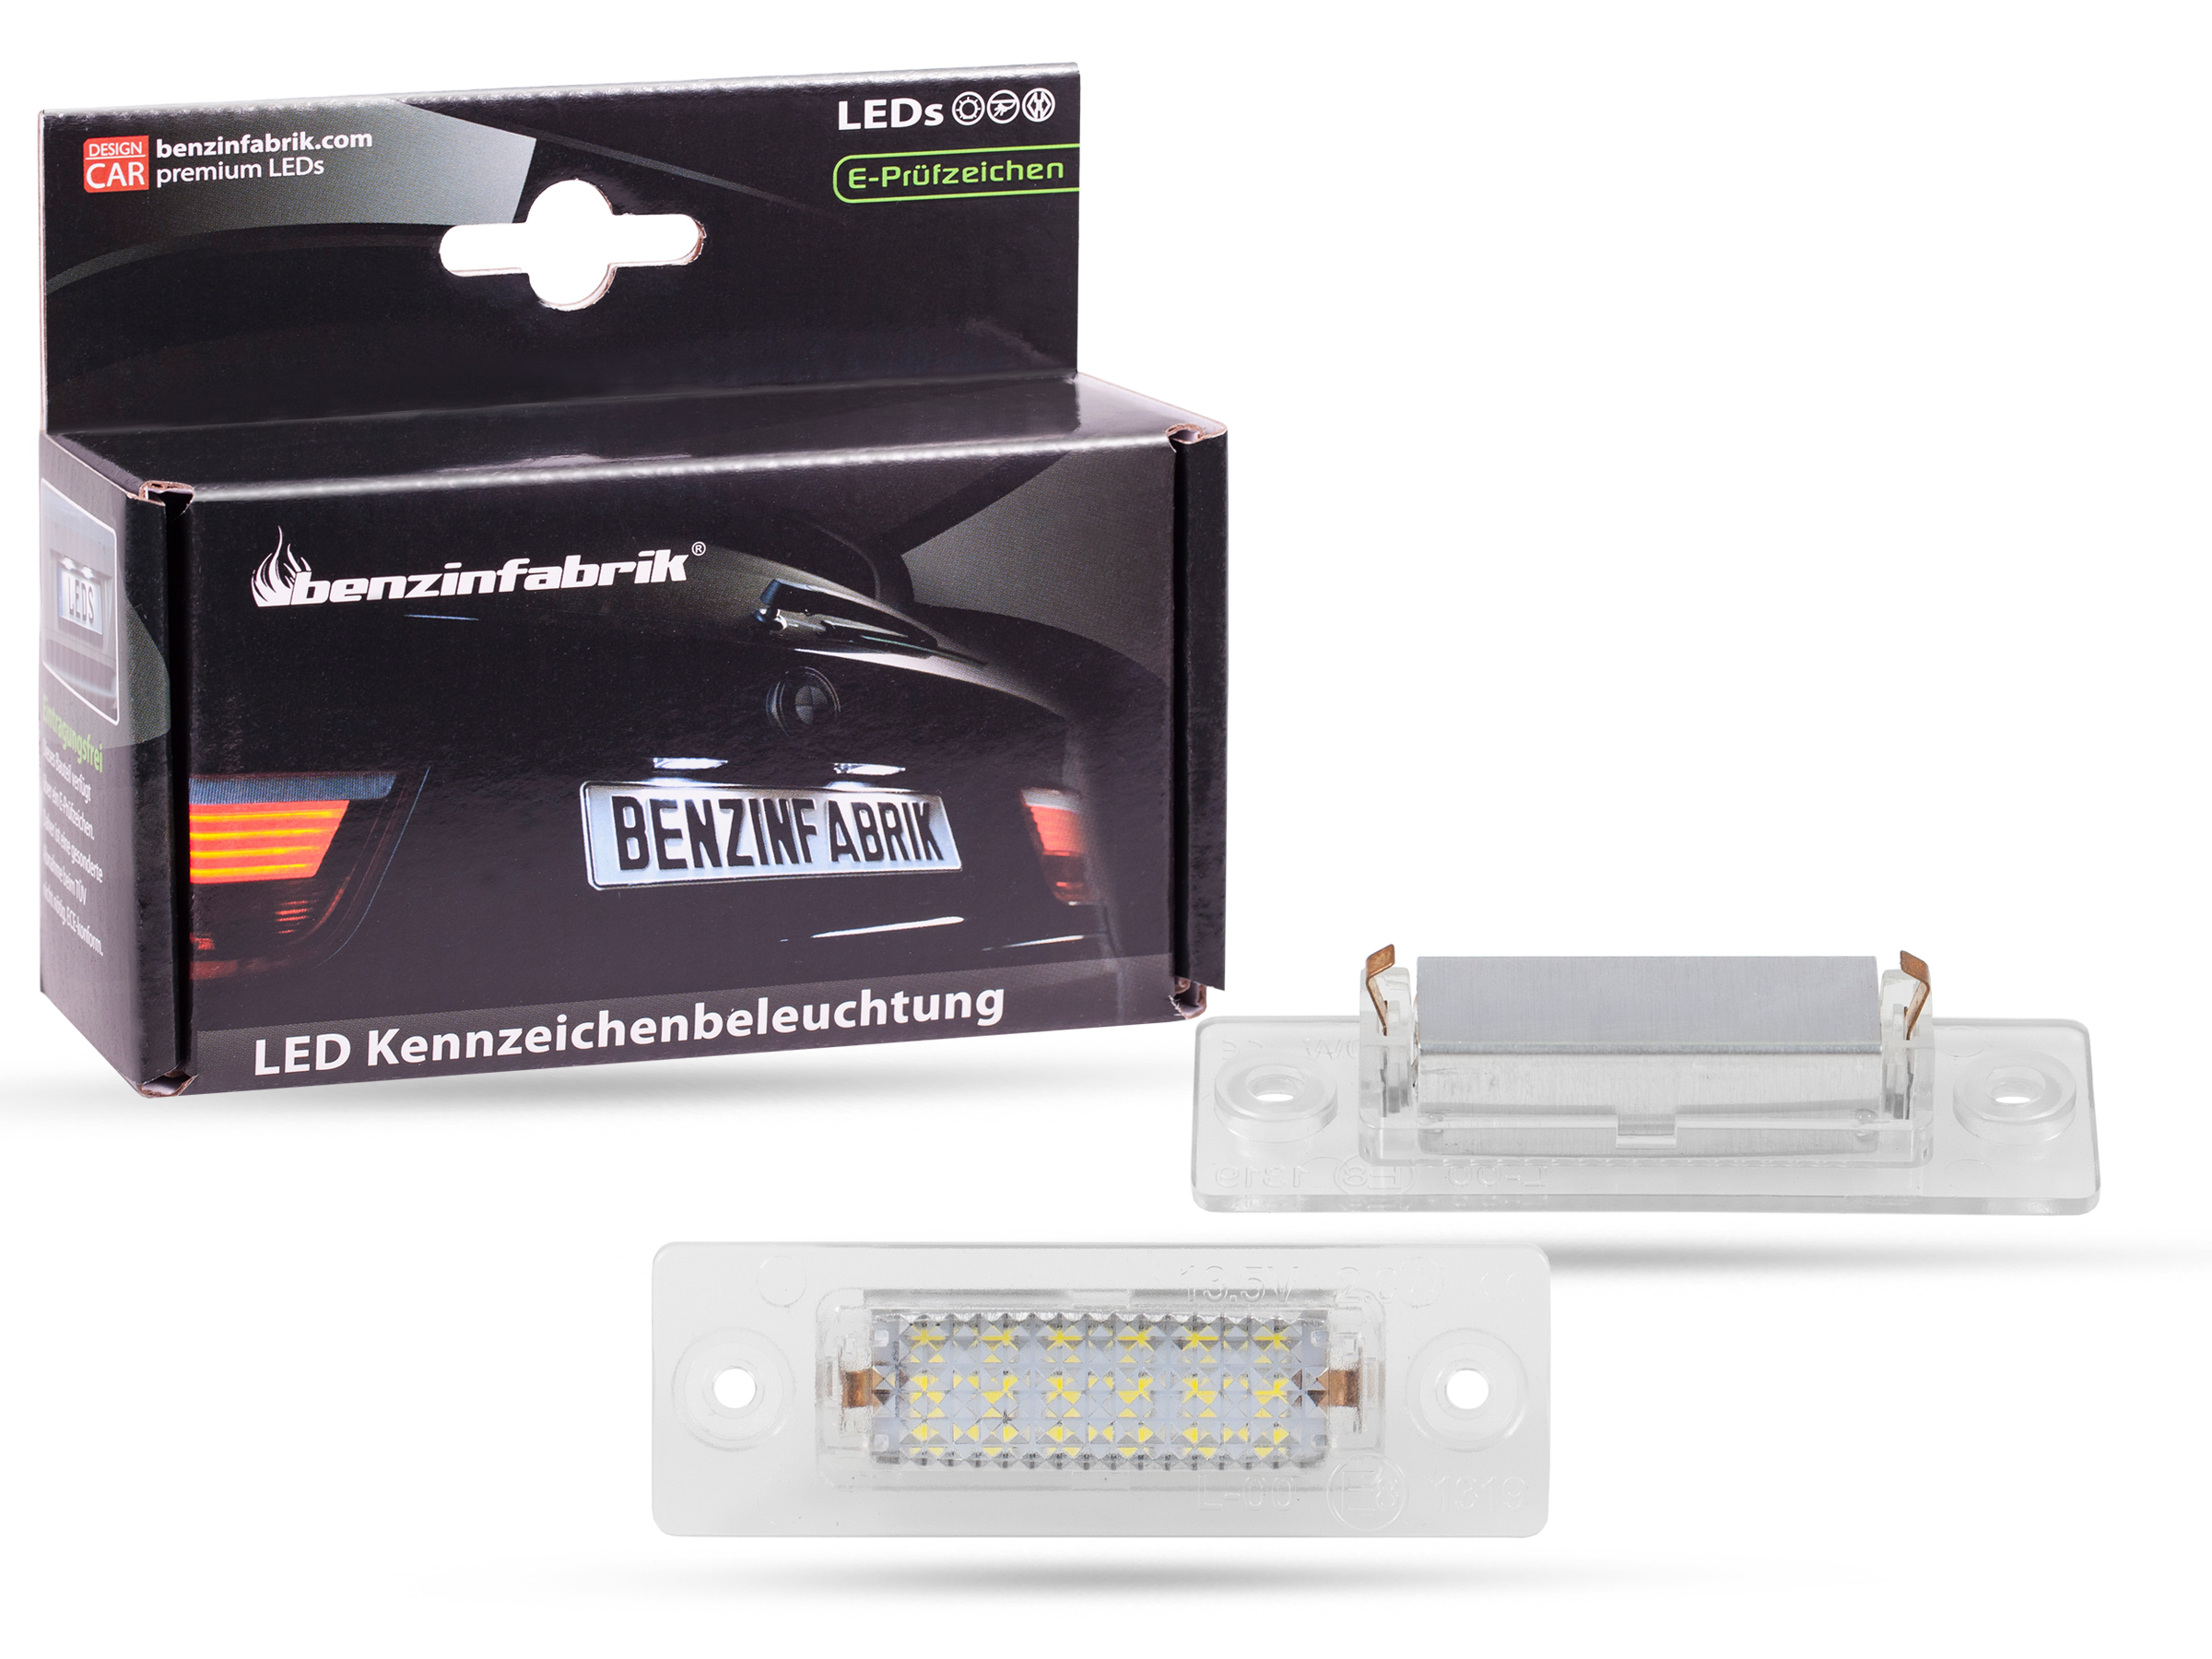 LED Kennzeichenbeleuchtung Module VW T5, mit E-Prüfzeichen